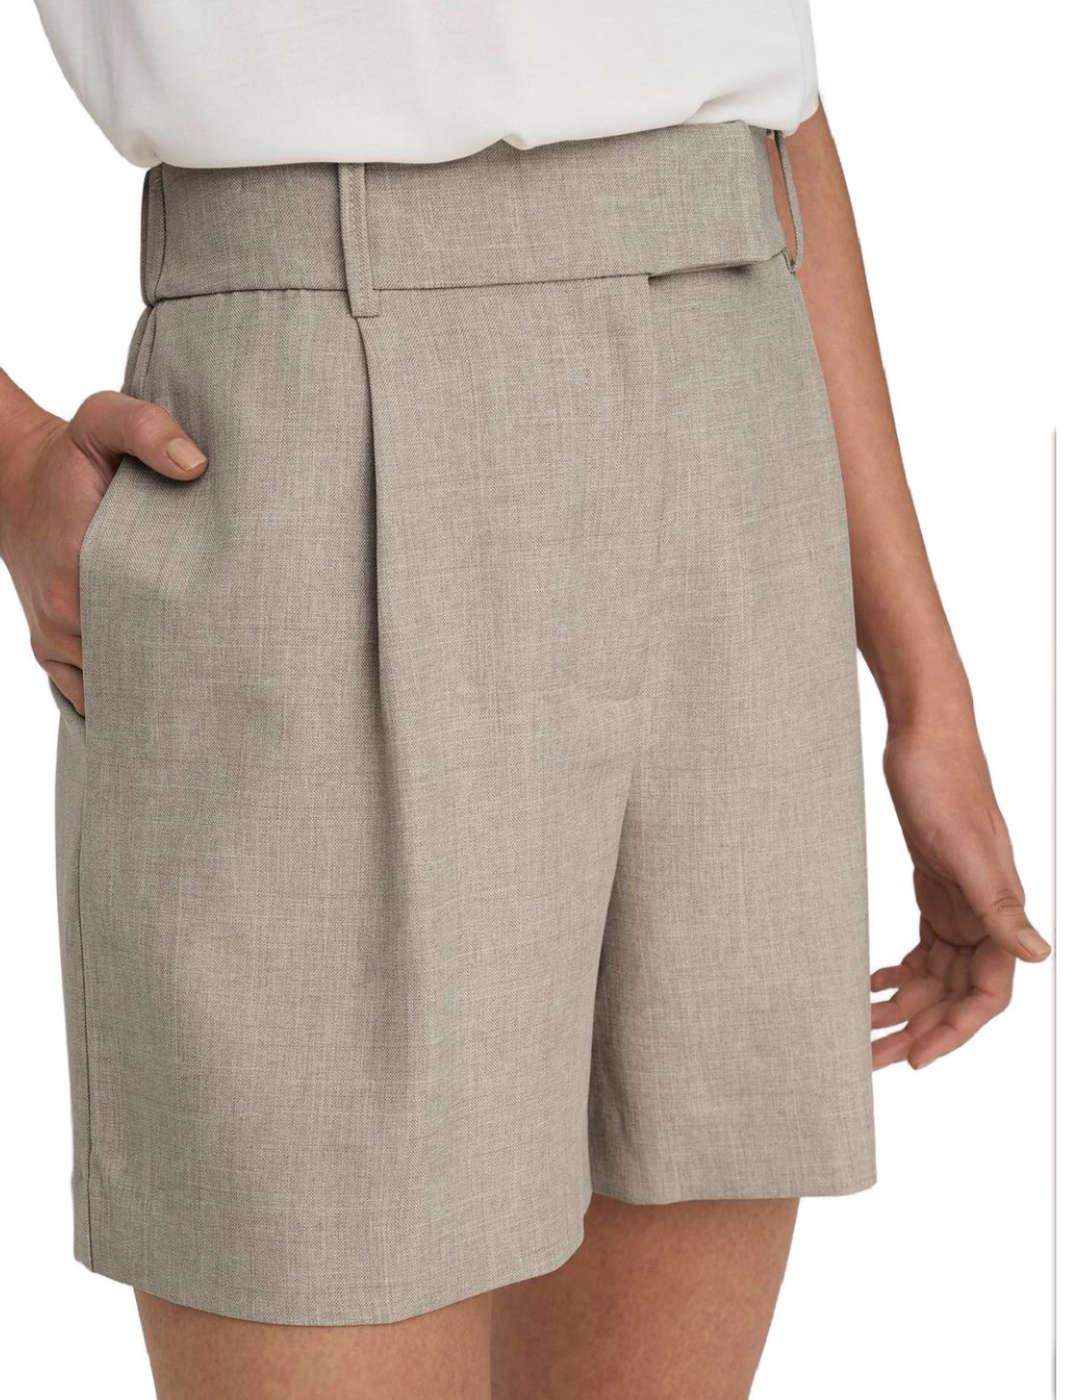 Shorts corto Only de pinzas color marrón para mujer